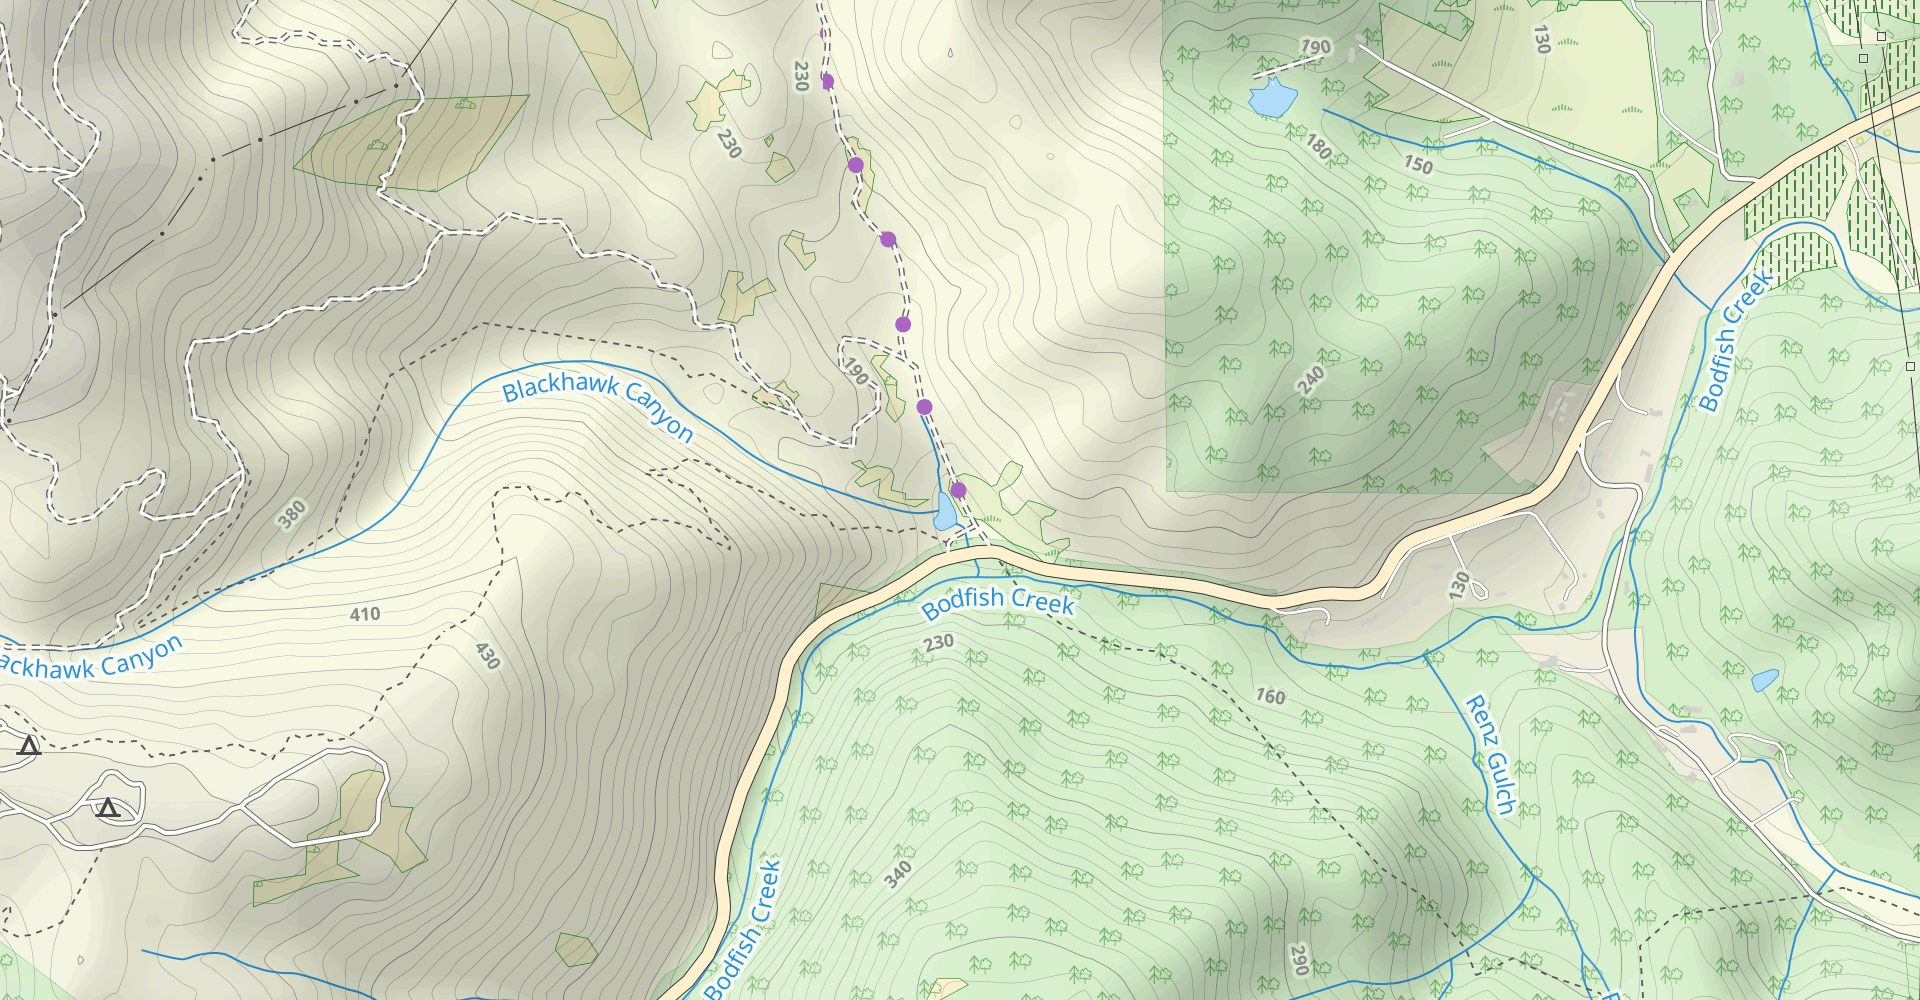 Ridge and Sprig Trails Loop